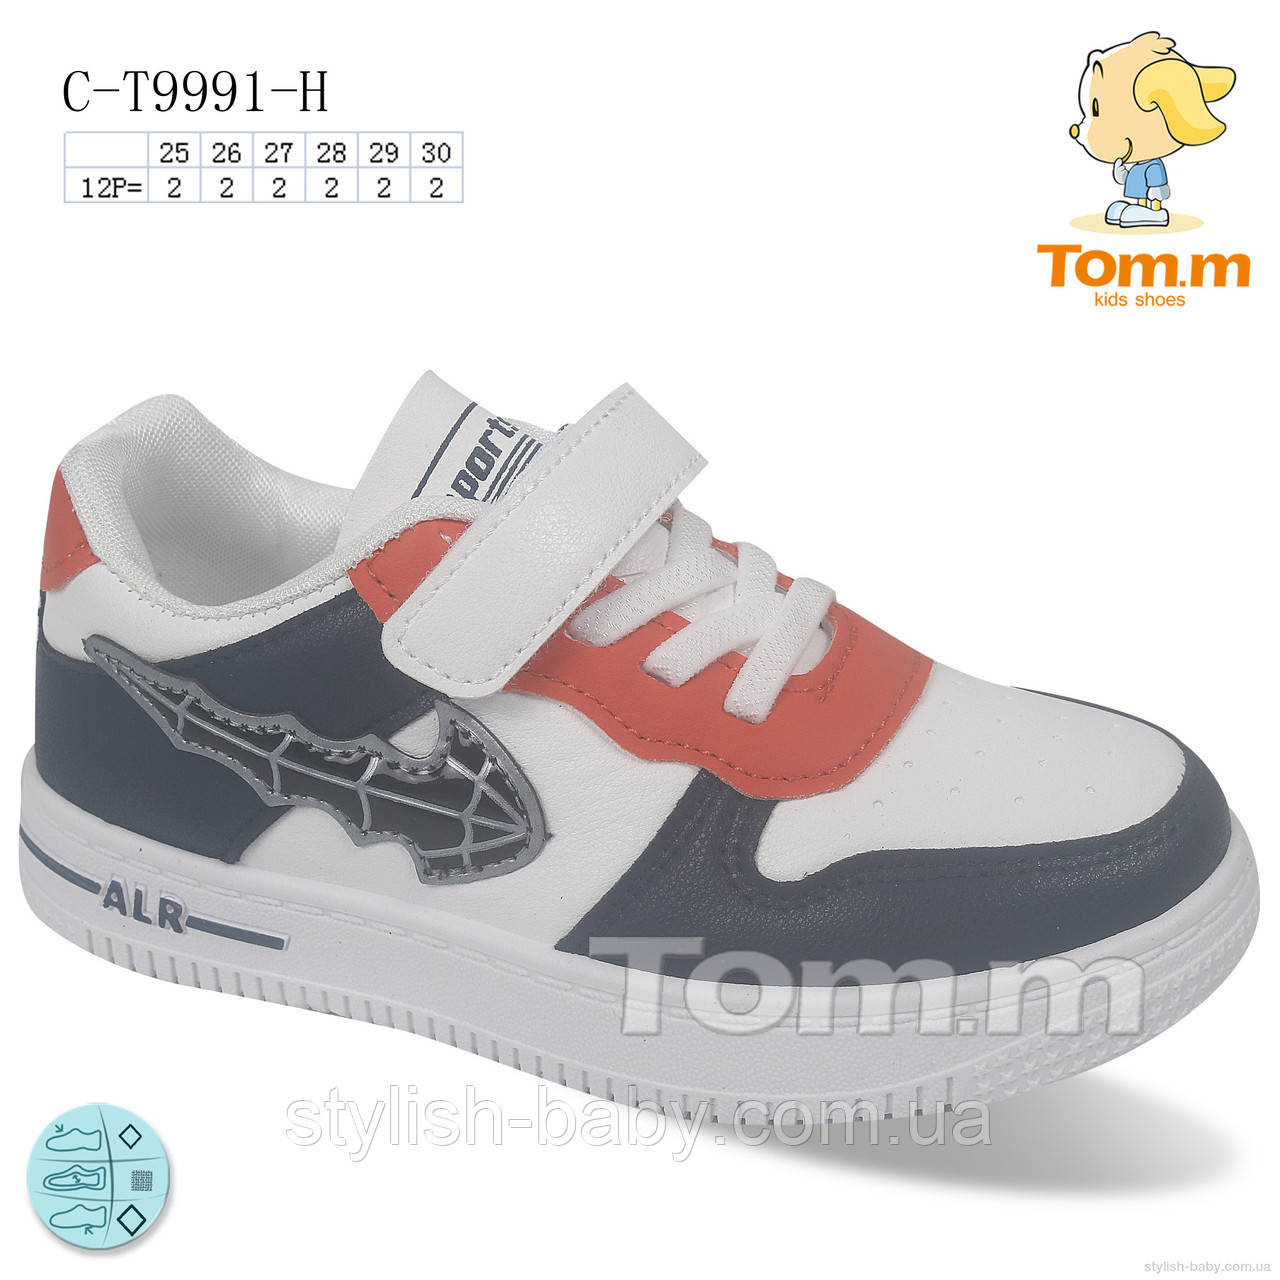 Дитяче взуття оптом. Дитячі кеди 2022 бренду Tom.m для хлопчиків (рр. з 25 по 30)